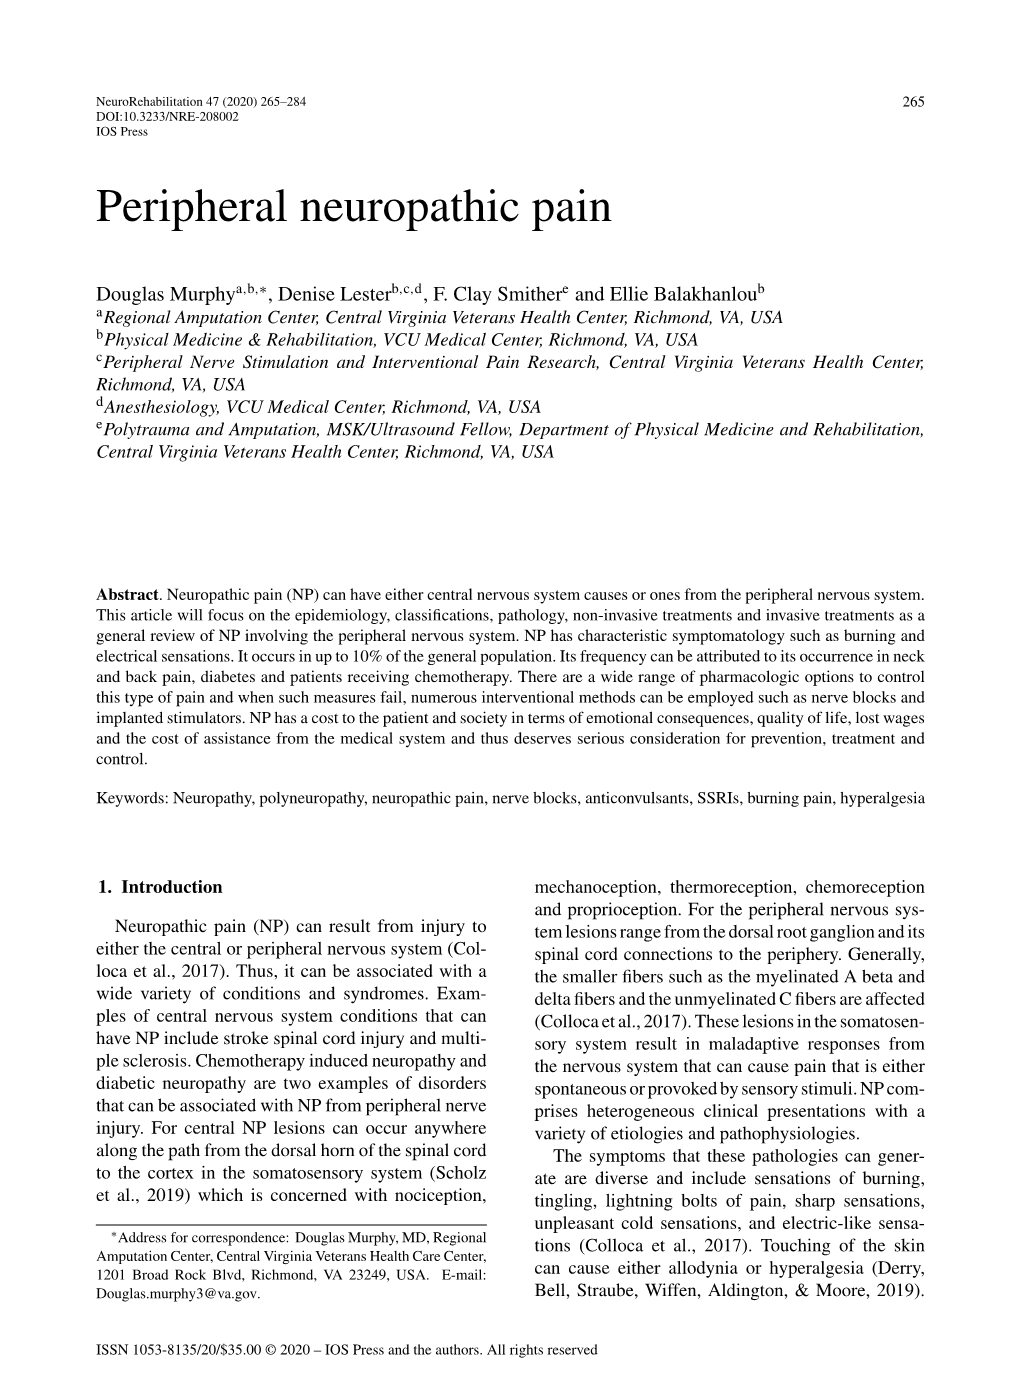 Peripheral Neuropathic Pain